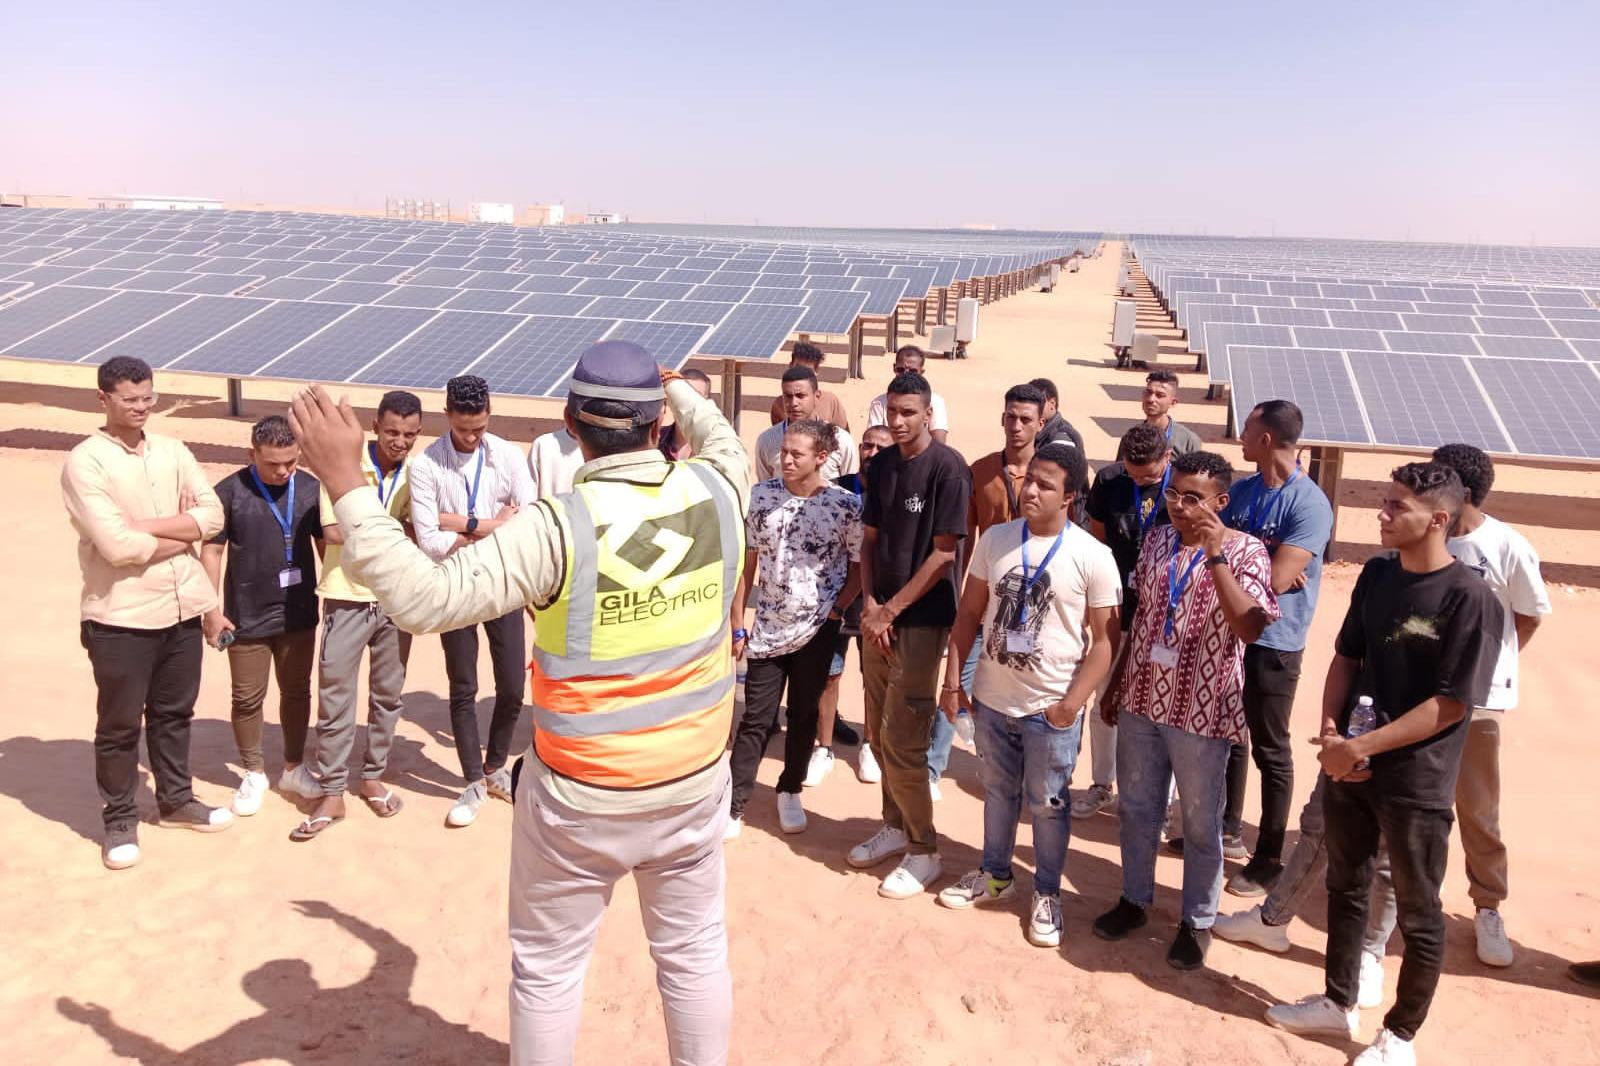 برنامج الأمم المتحدة الإنمائي: مصر بدأت برنامجا طموحا لاستخدام تقنيات الطاقة المتجددة ومشروع الطاقة الشمسية 